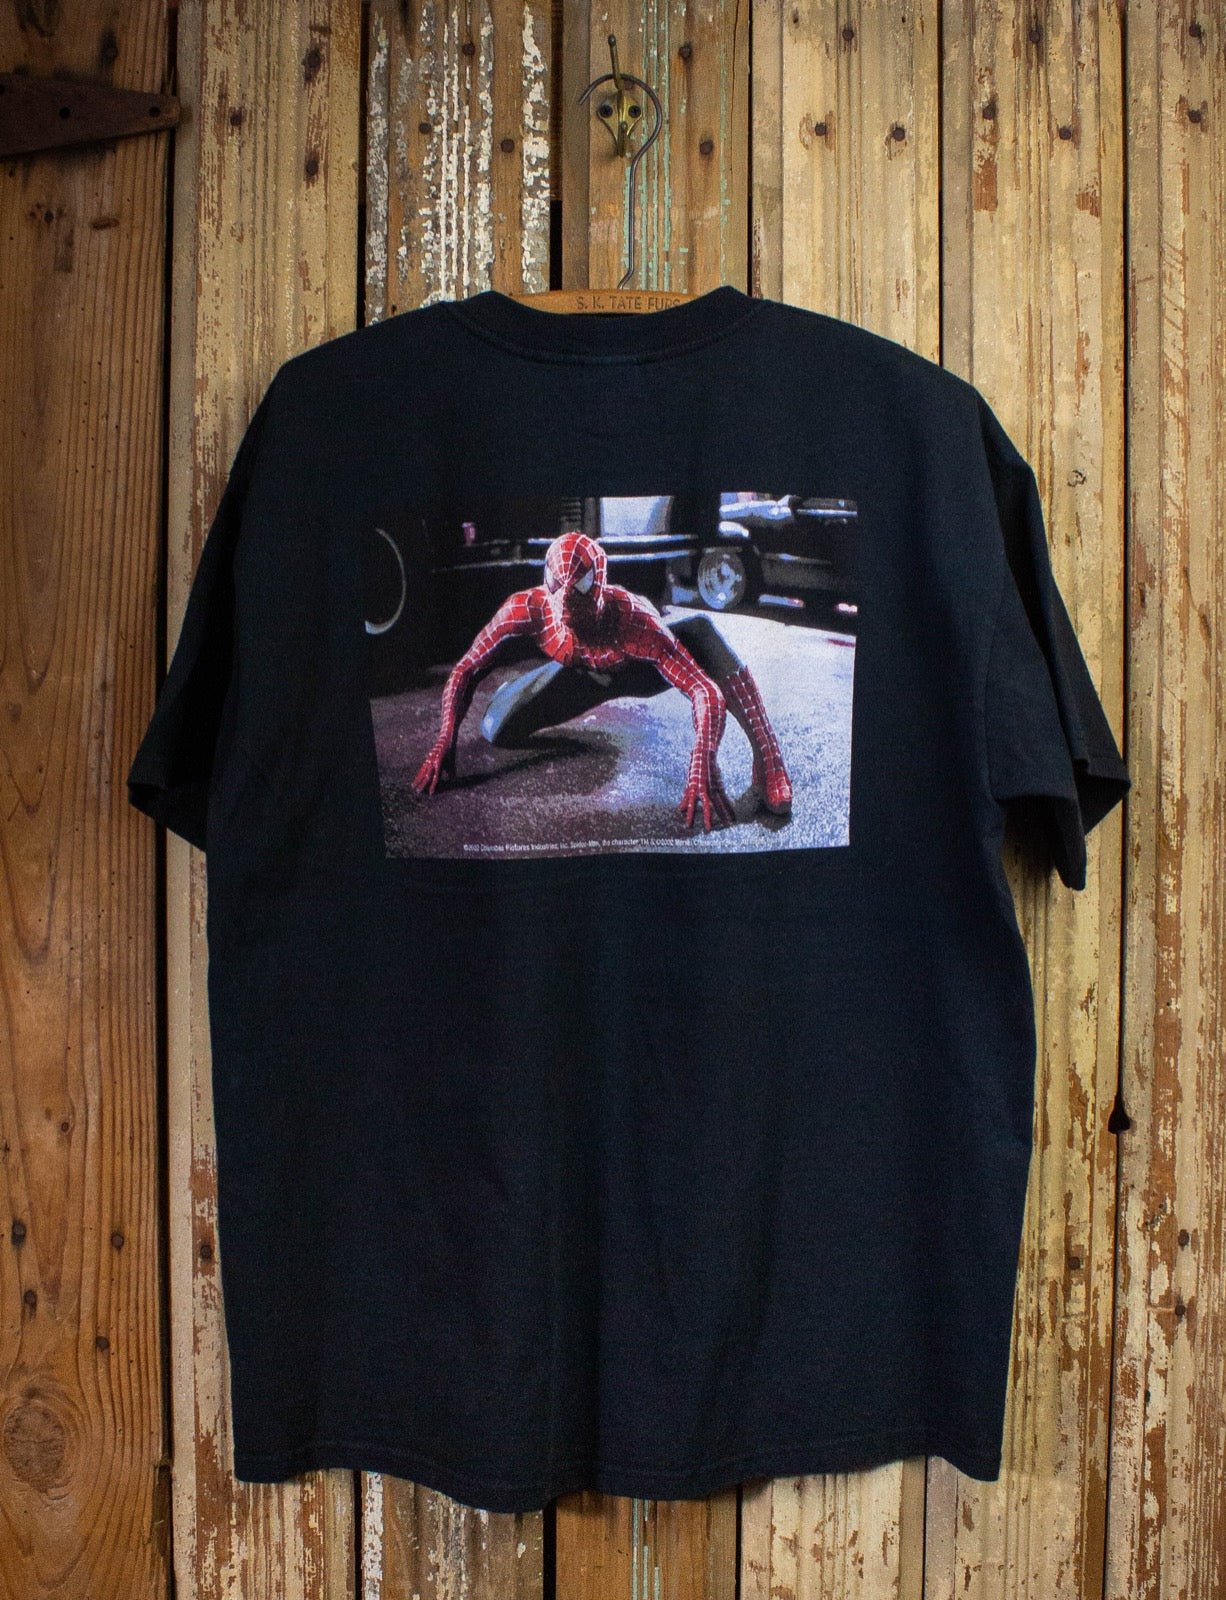 Vintage Spider-Man Movie Promo Graphic T Shirt 2002 Black XL